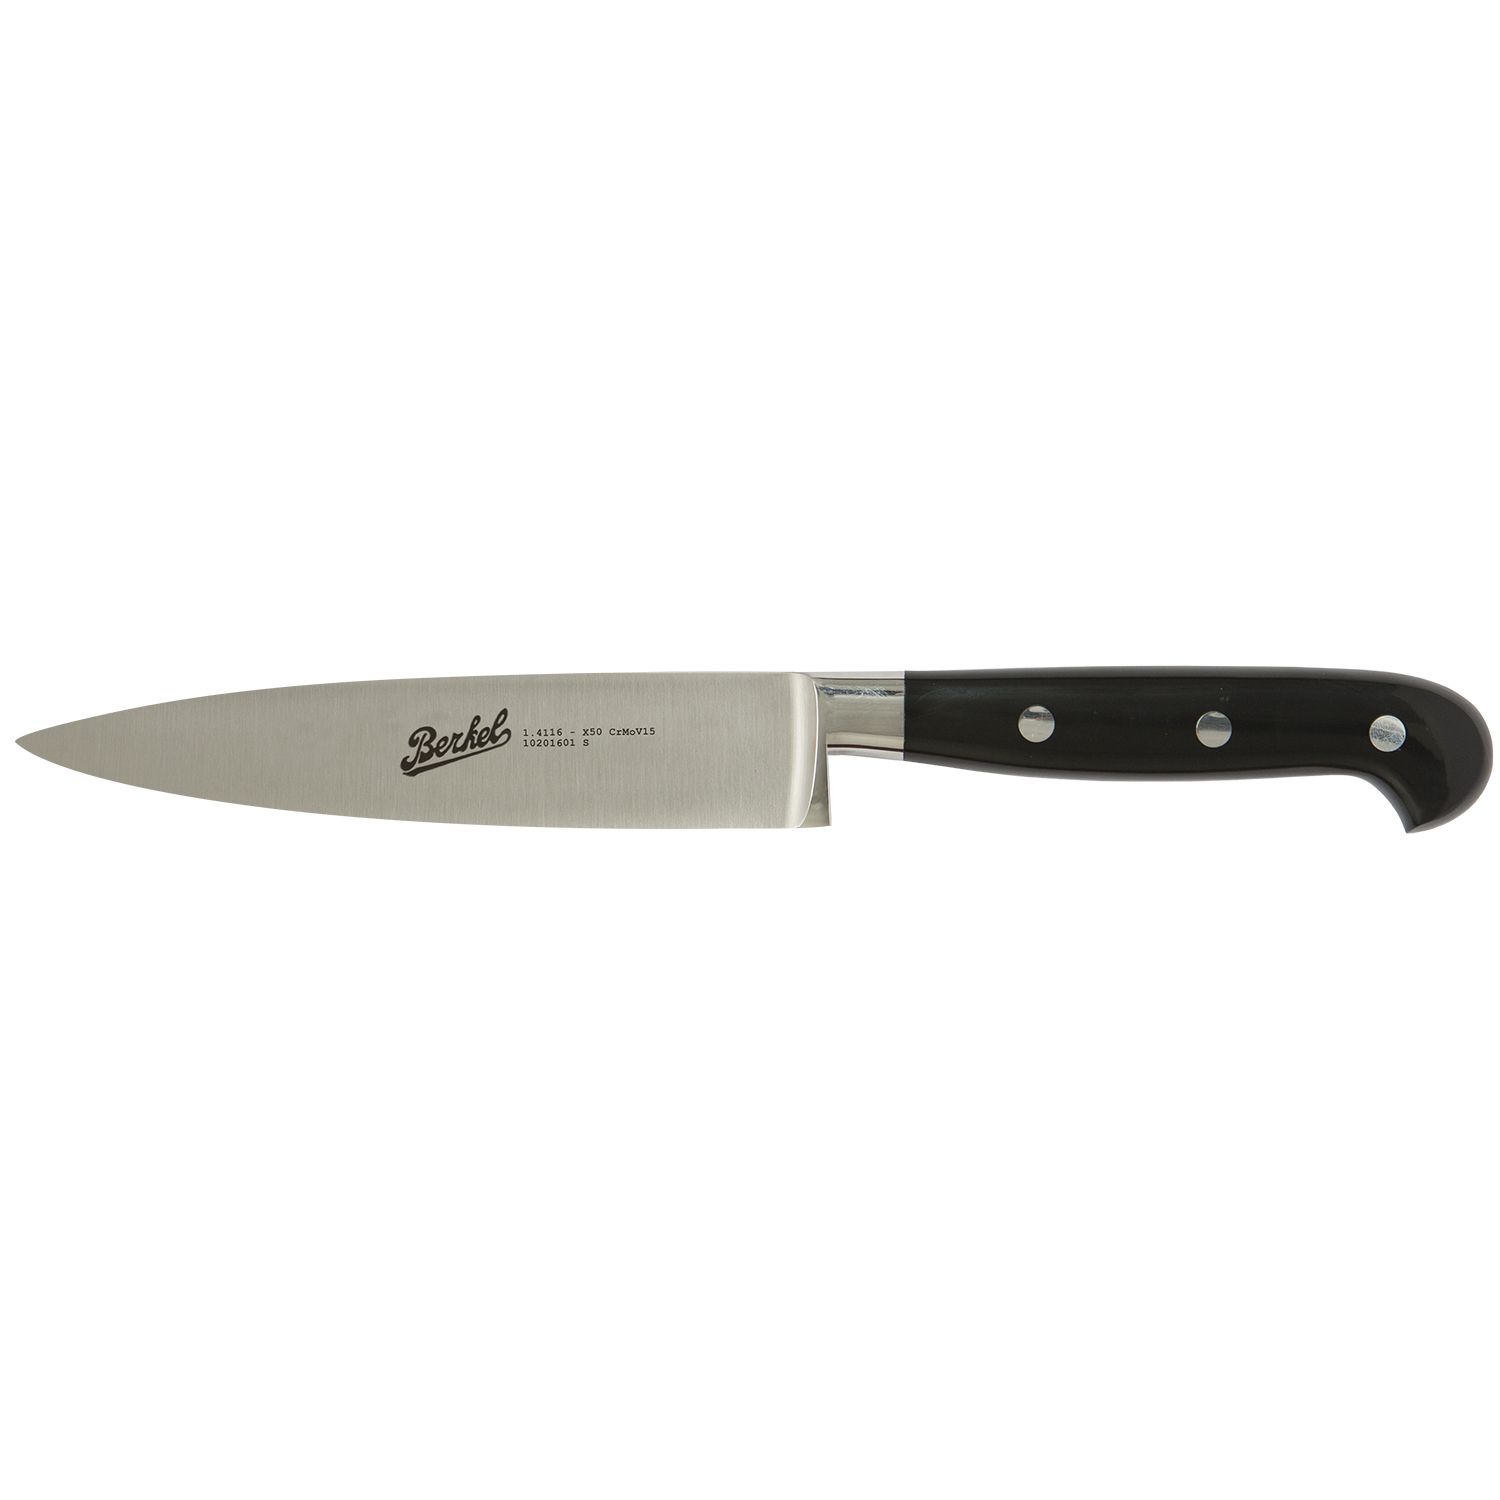 Cook's knife cm.16  Stainless Steel Berkel Adhoc Handle Glossy Black Resin